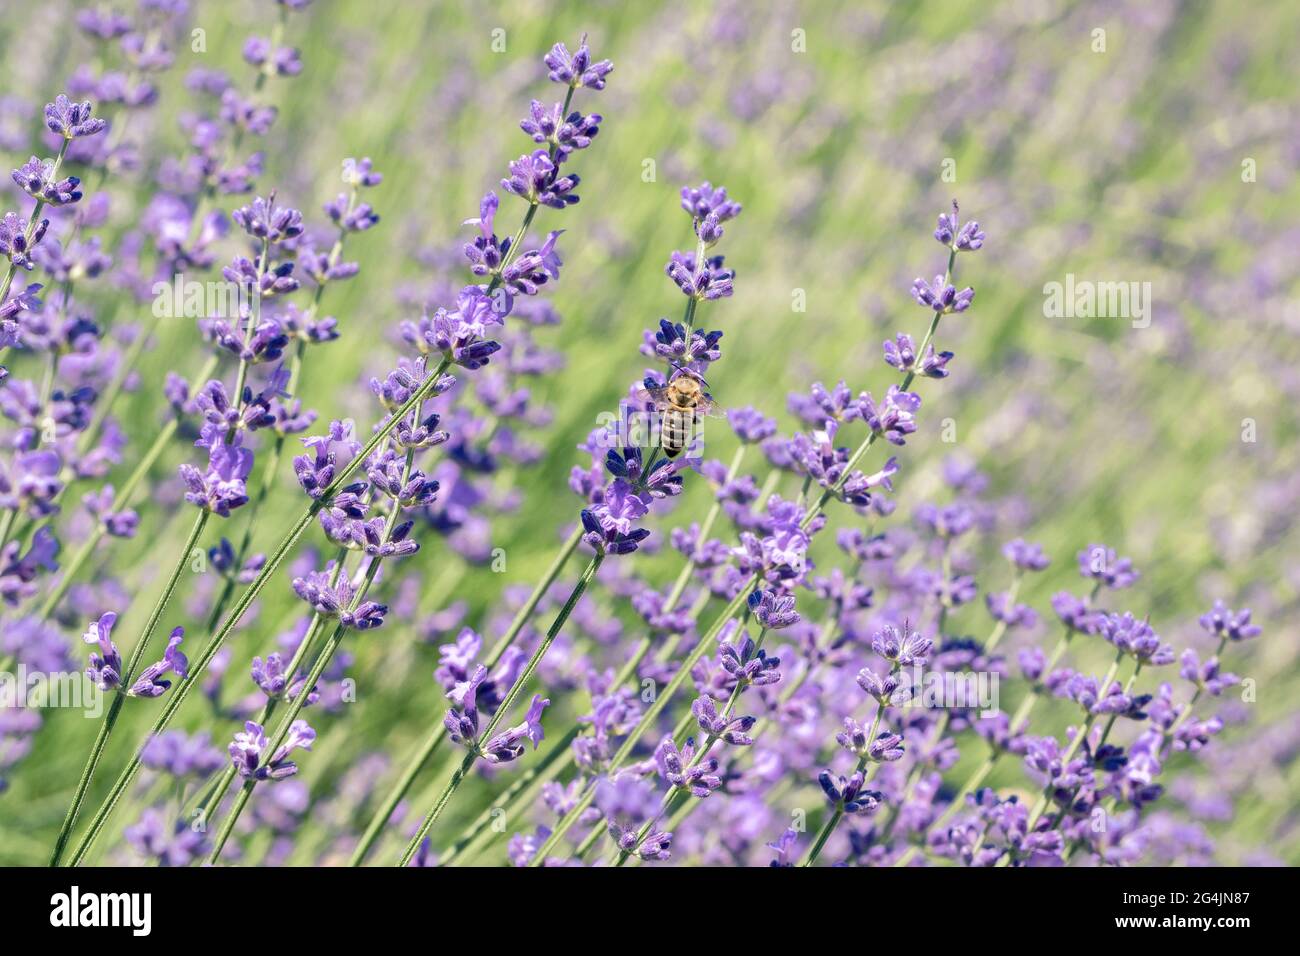 Bienen sammeln Nektar auf Lavendelblüten. Selektiver Fokus auf Frühlingsinsekten. Hintergrund in Pastellfarben. Weiches, verträumtes Tragegefühl. Stockfoto